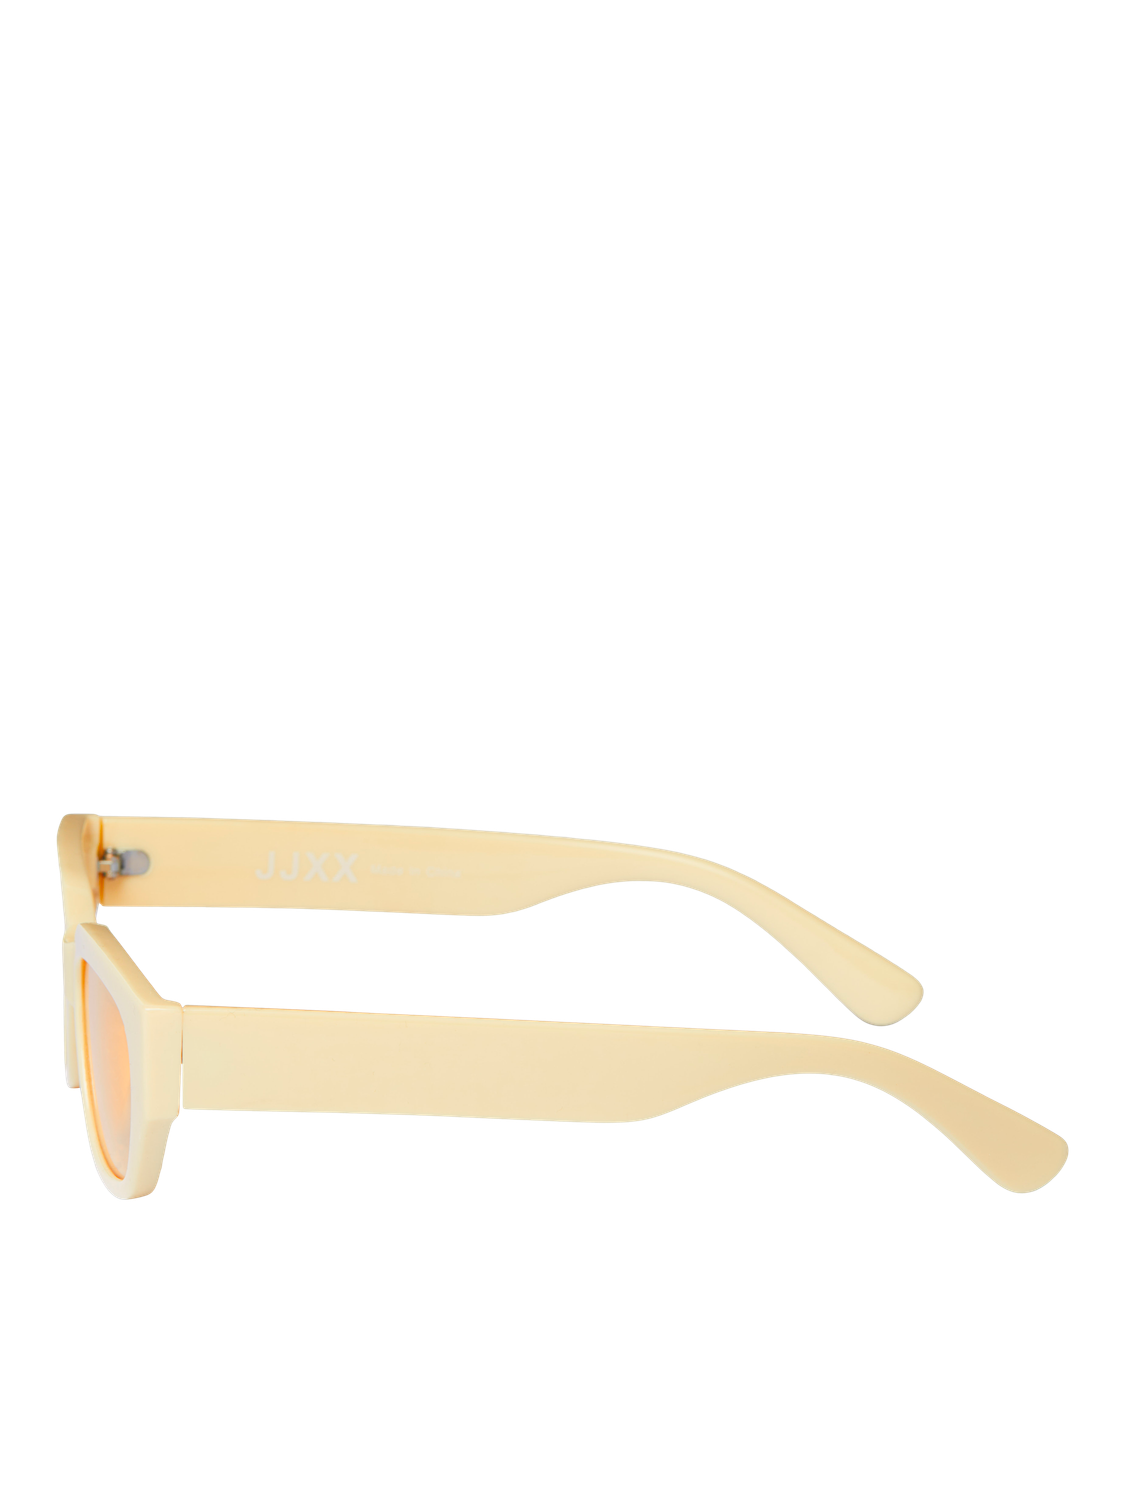 JJXX JXKANSAS Des lunettes de soleil -French Vanilla - 12251632